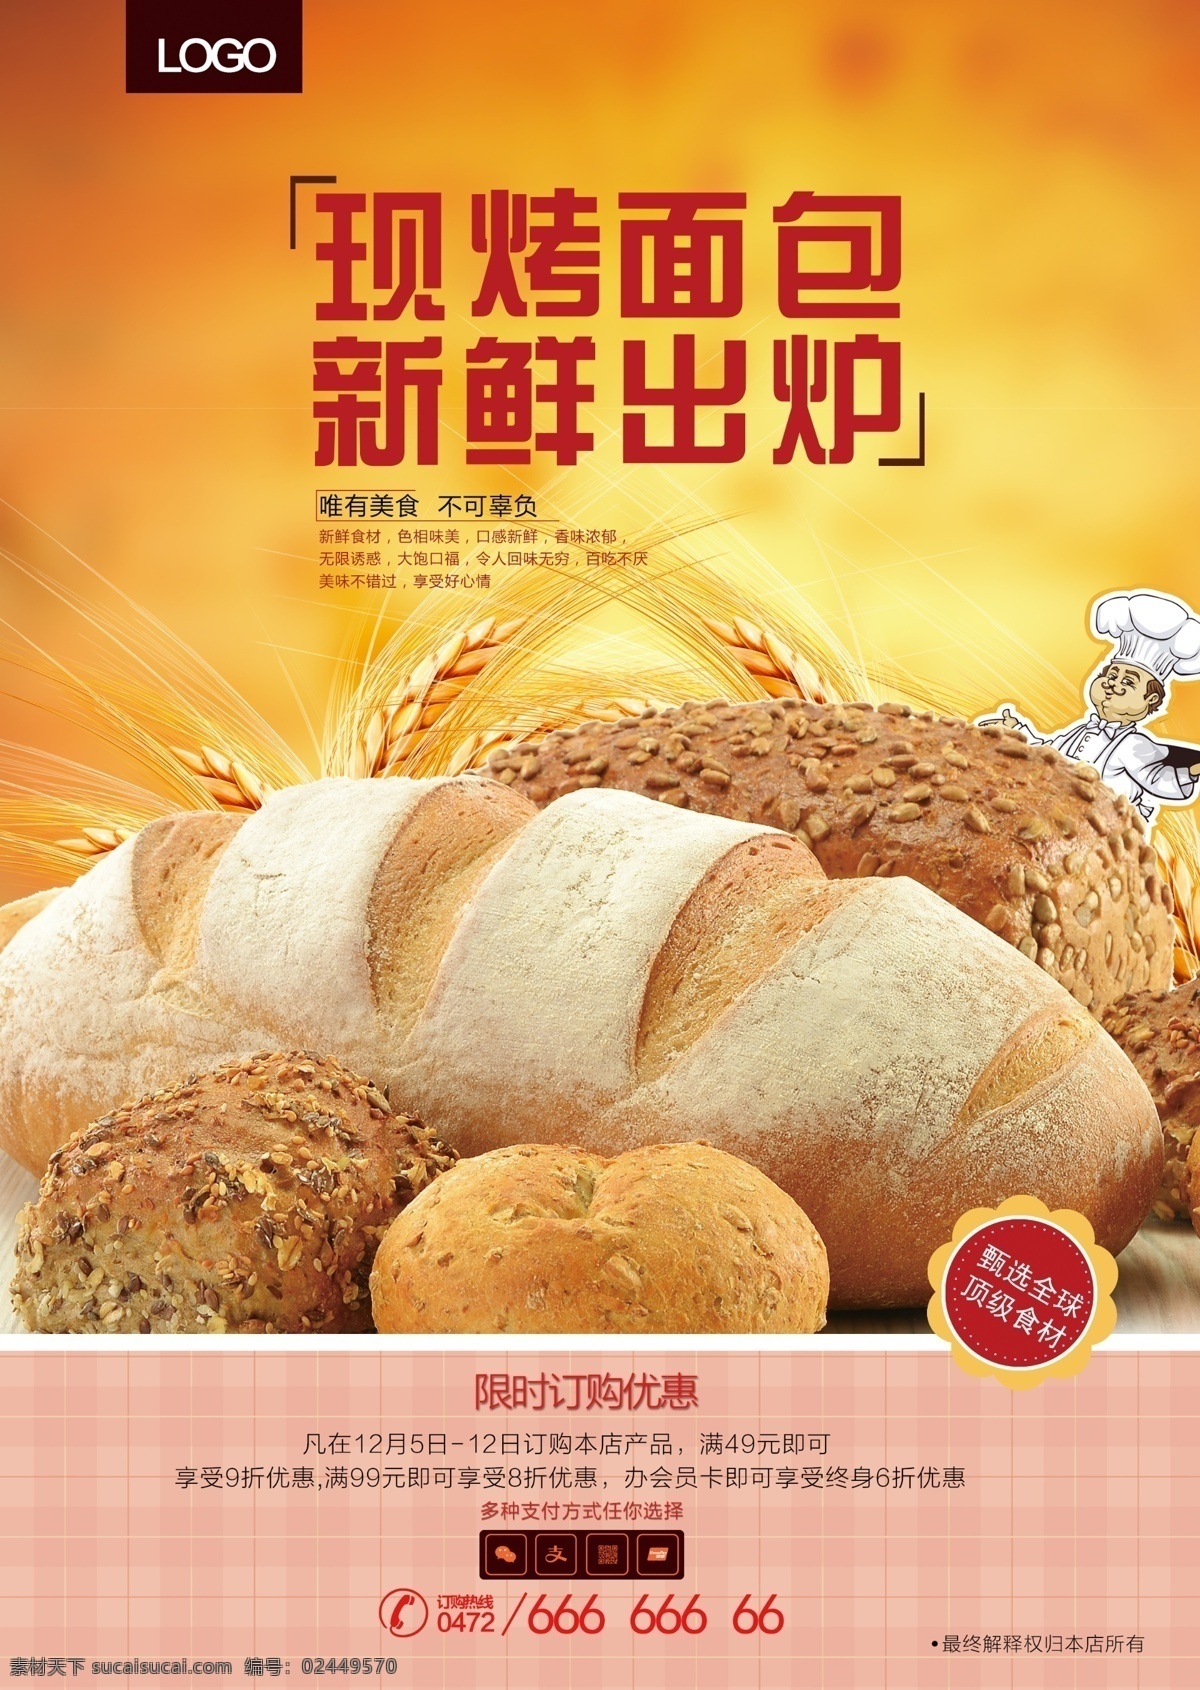 现 烤 面包 新鲜 出炉 面包海报 新鲜面包 现烤面包 面包烘培 面包展板 面包文化 面包广告 面包促销 面包店 面包点心 超市 面包制作 面包蛋糕 面包房 面包订做 面包糕点 面包牛奶 面包早餐